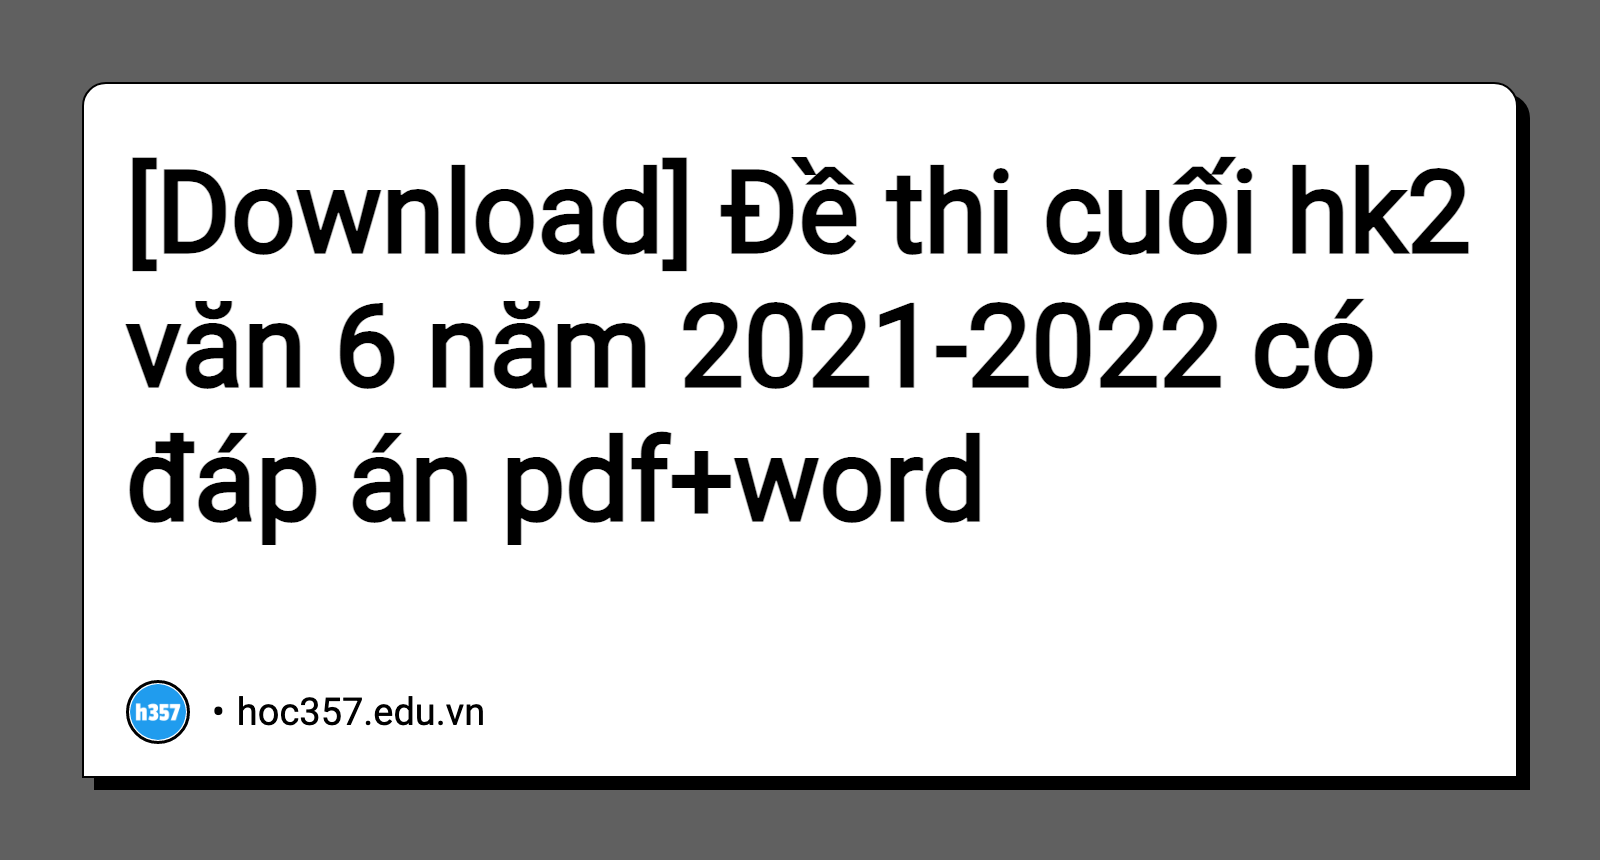 Hình minh họa Đề thi cuối hk2 văn 6 năm 2021-2022 có đáp án